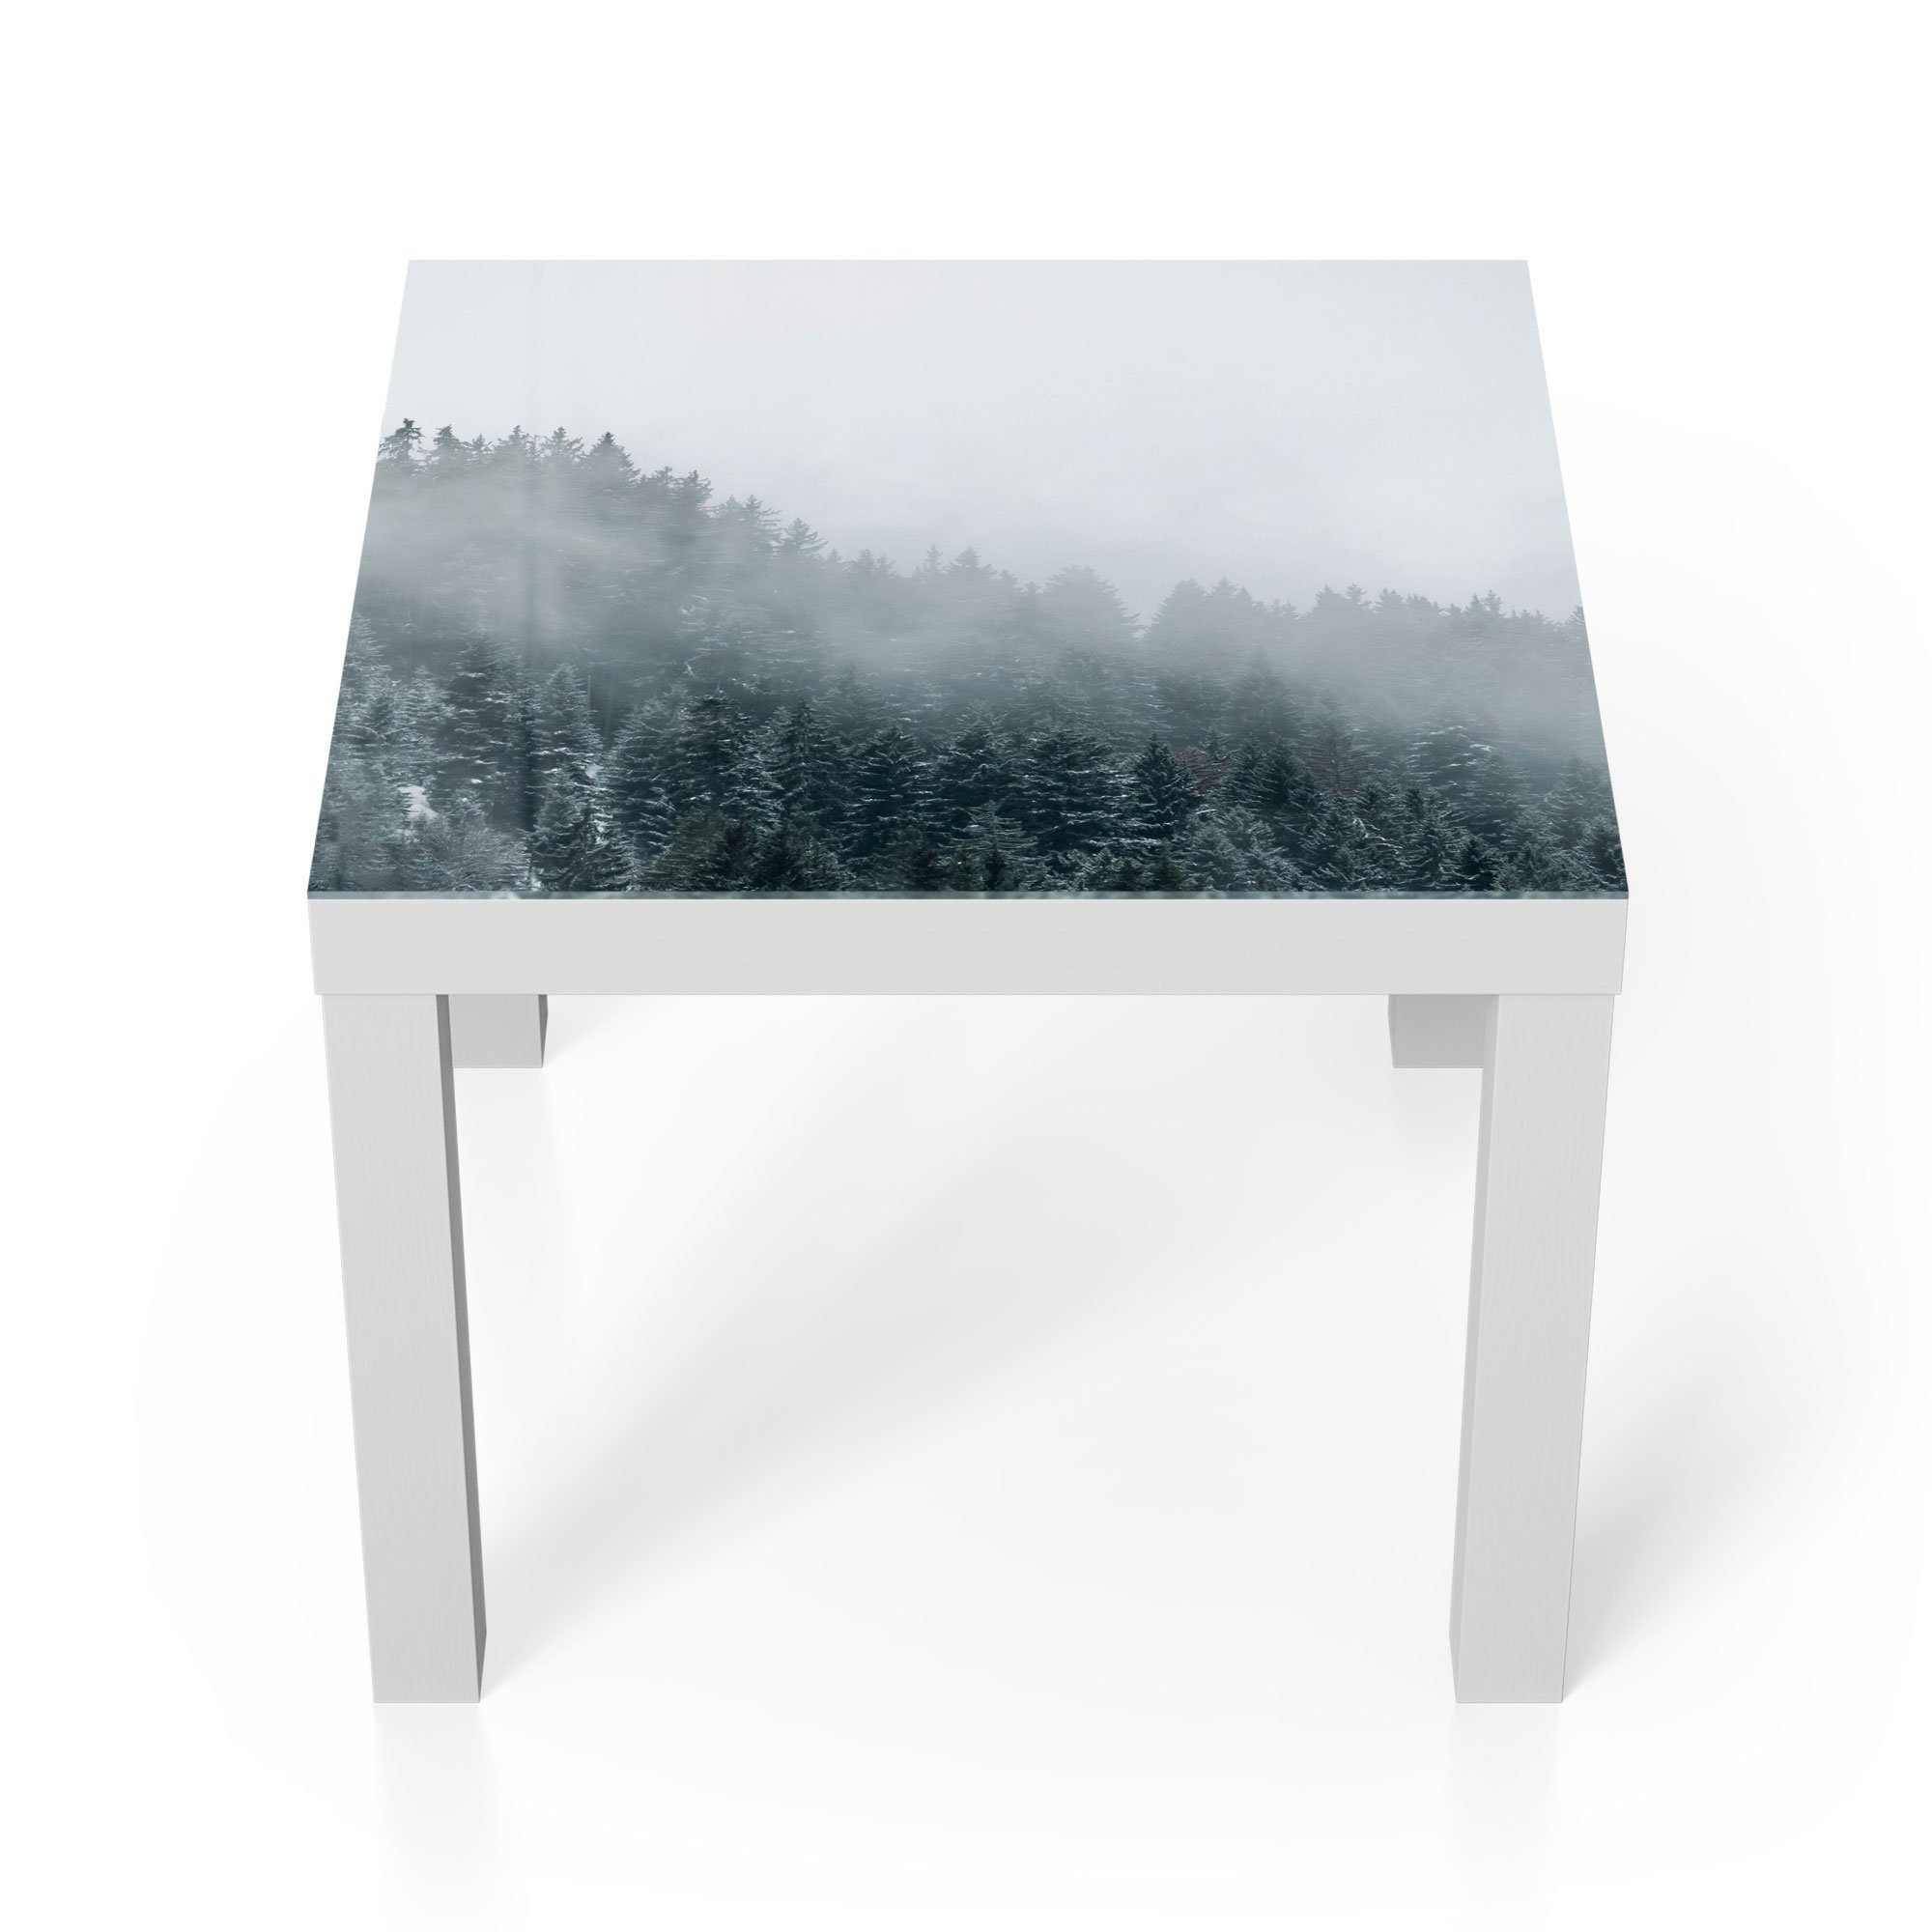 DEQORI Couchtisch 'Nebel über Baumwipfeln', Glas Beistelltisch Glastisch modern Weiß